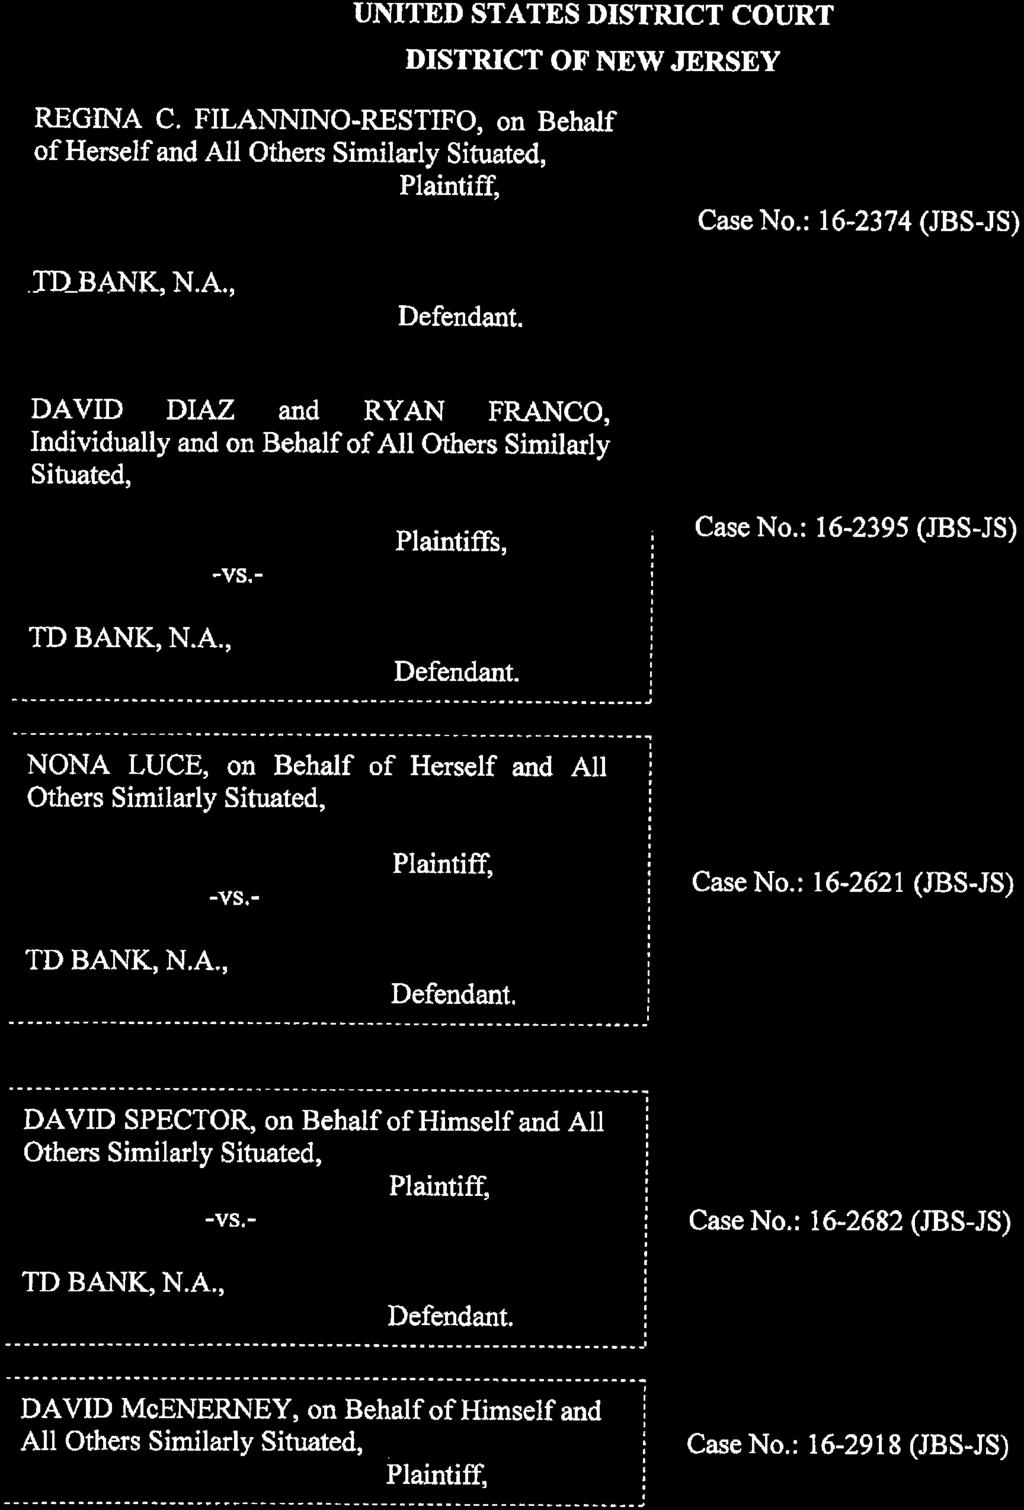 Case 1:16-cv-02374-JBS-JS Document 56-2